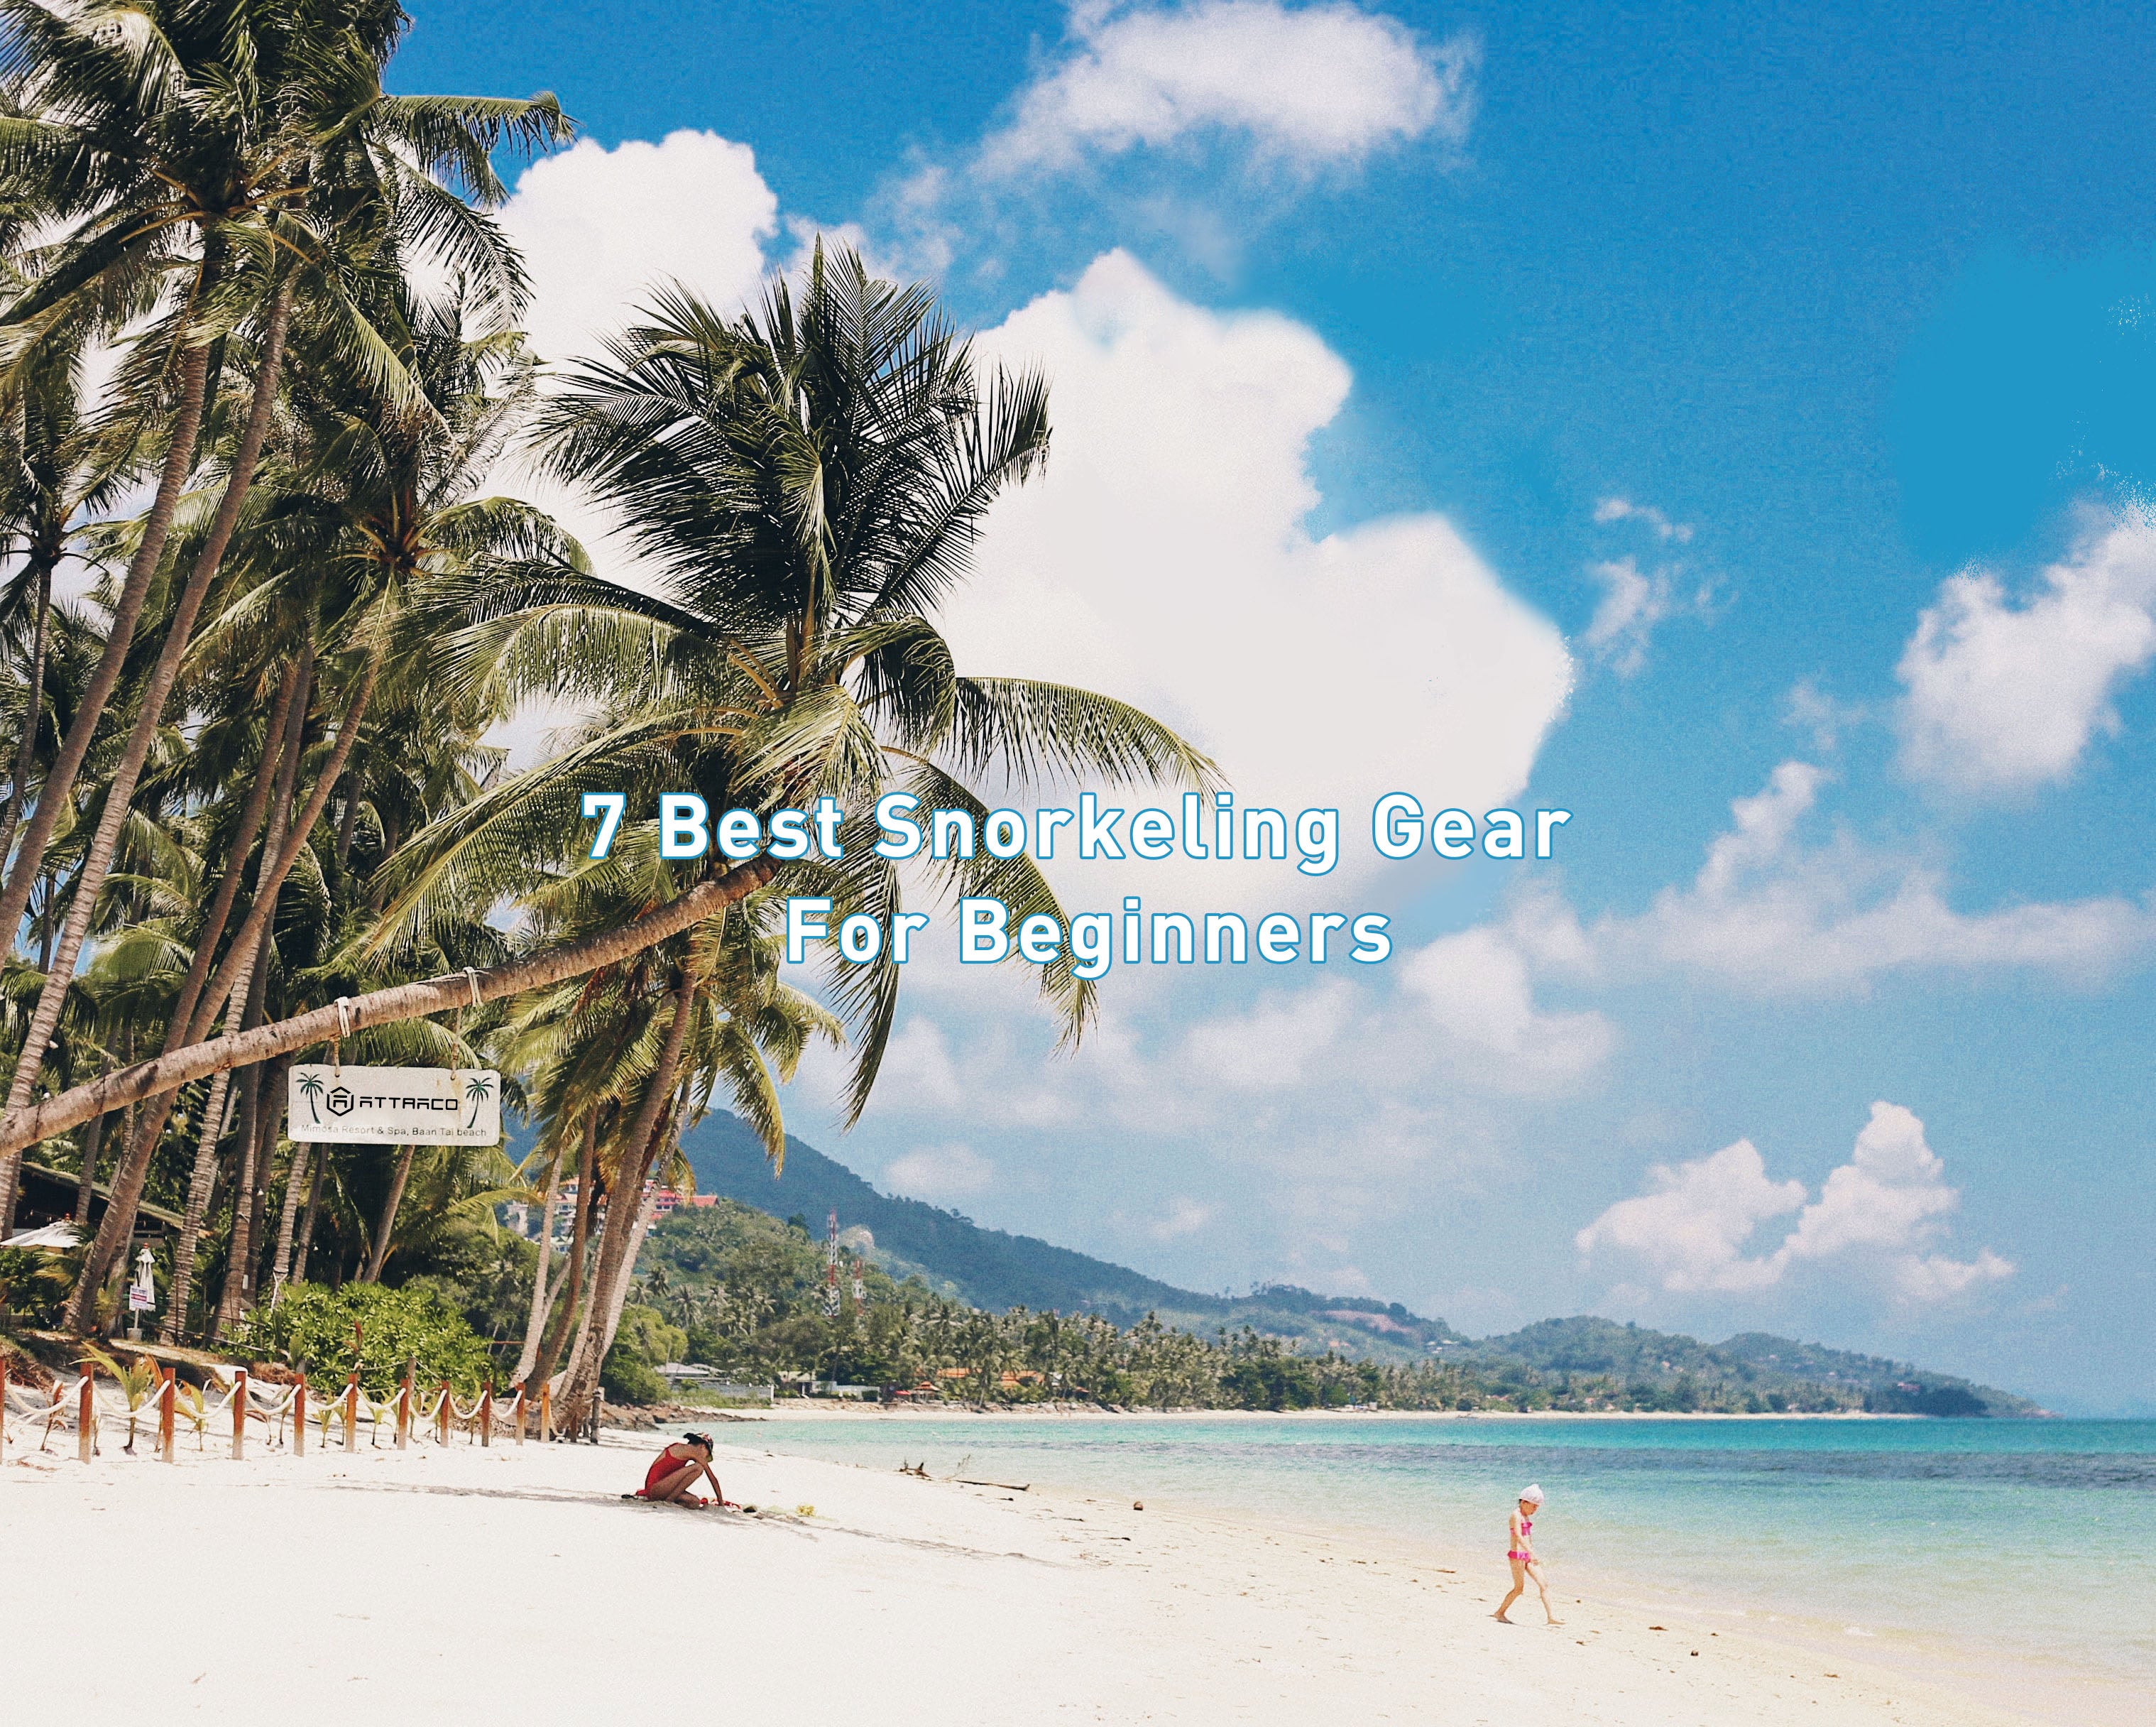 7 Best Snorkeling Gear For Beginners